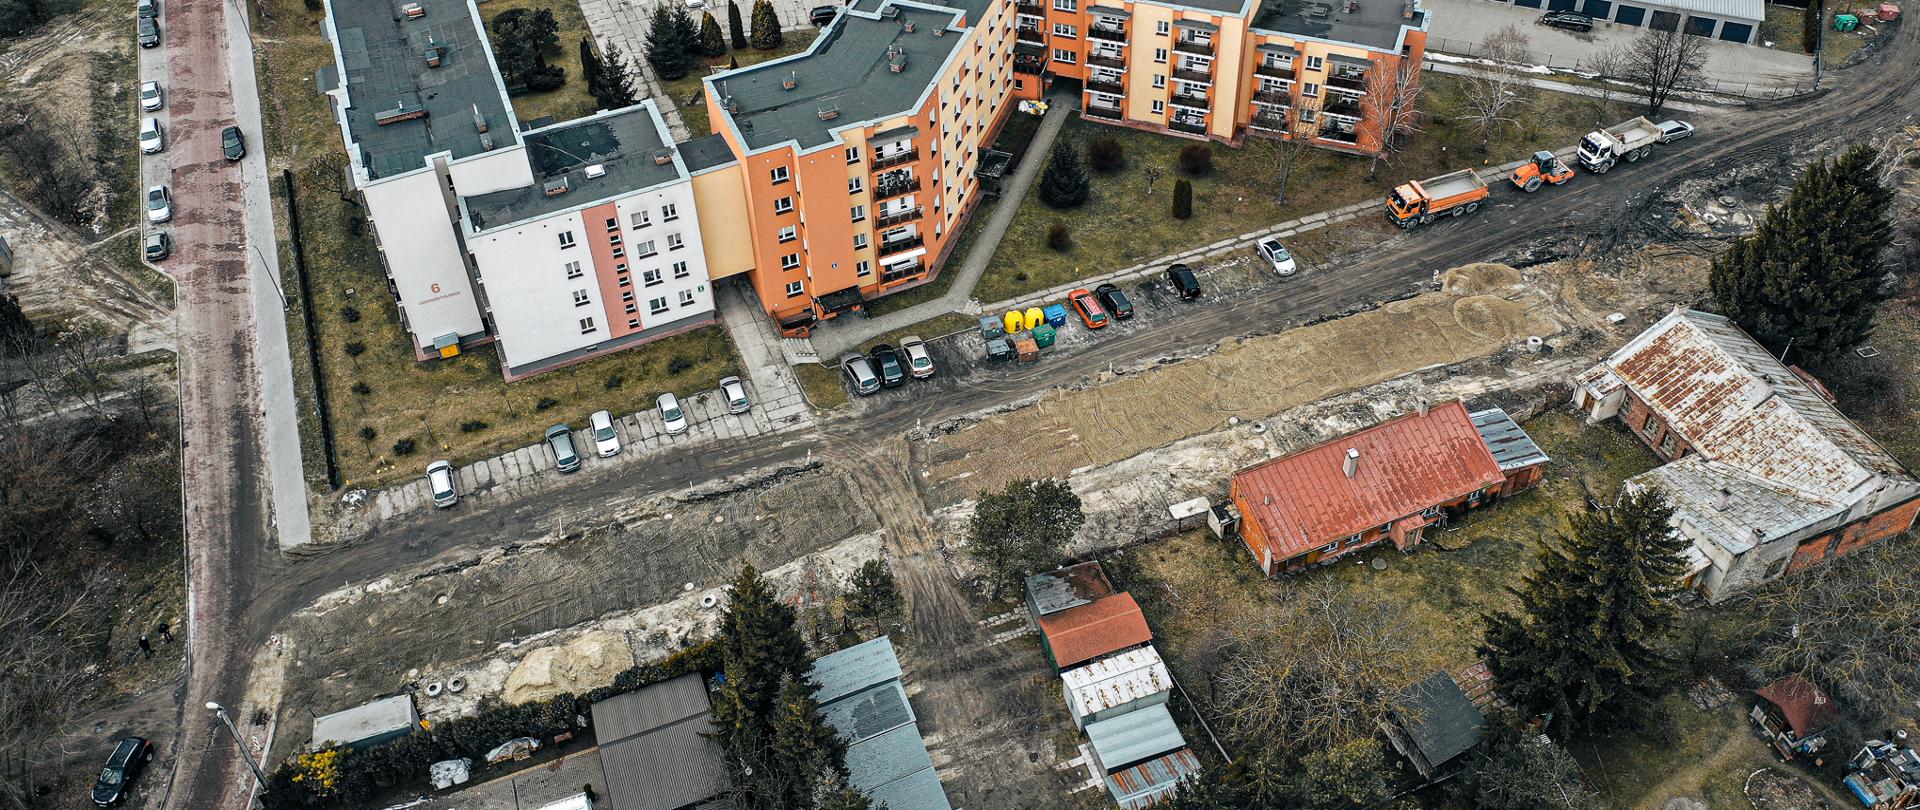 Zdjęcie przedstawia widok z drona na osiedle mieszkaniowe. Po środku remontowana i budowana droga